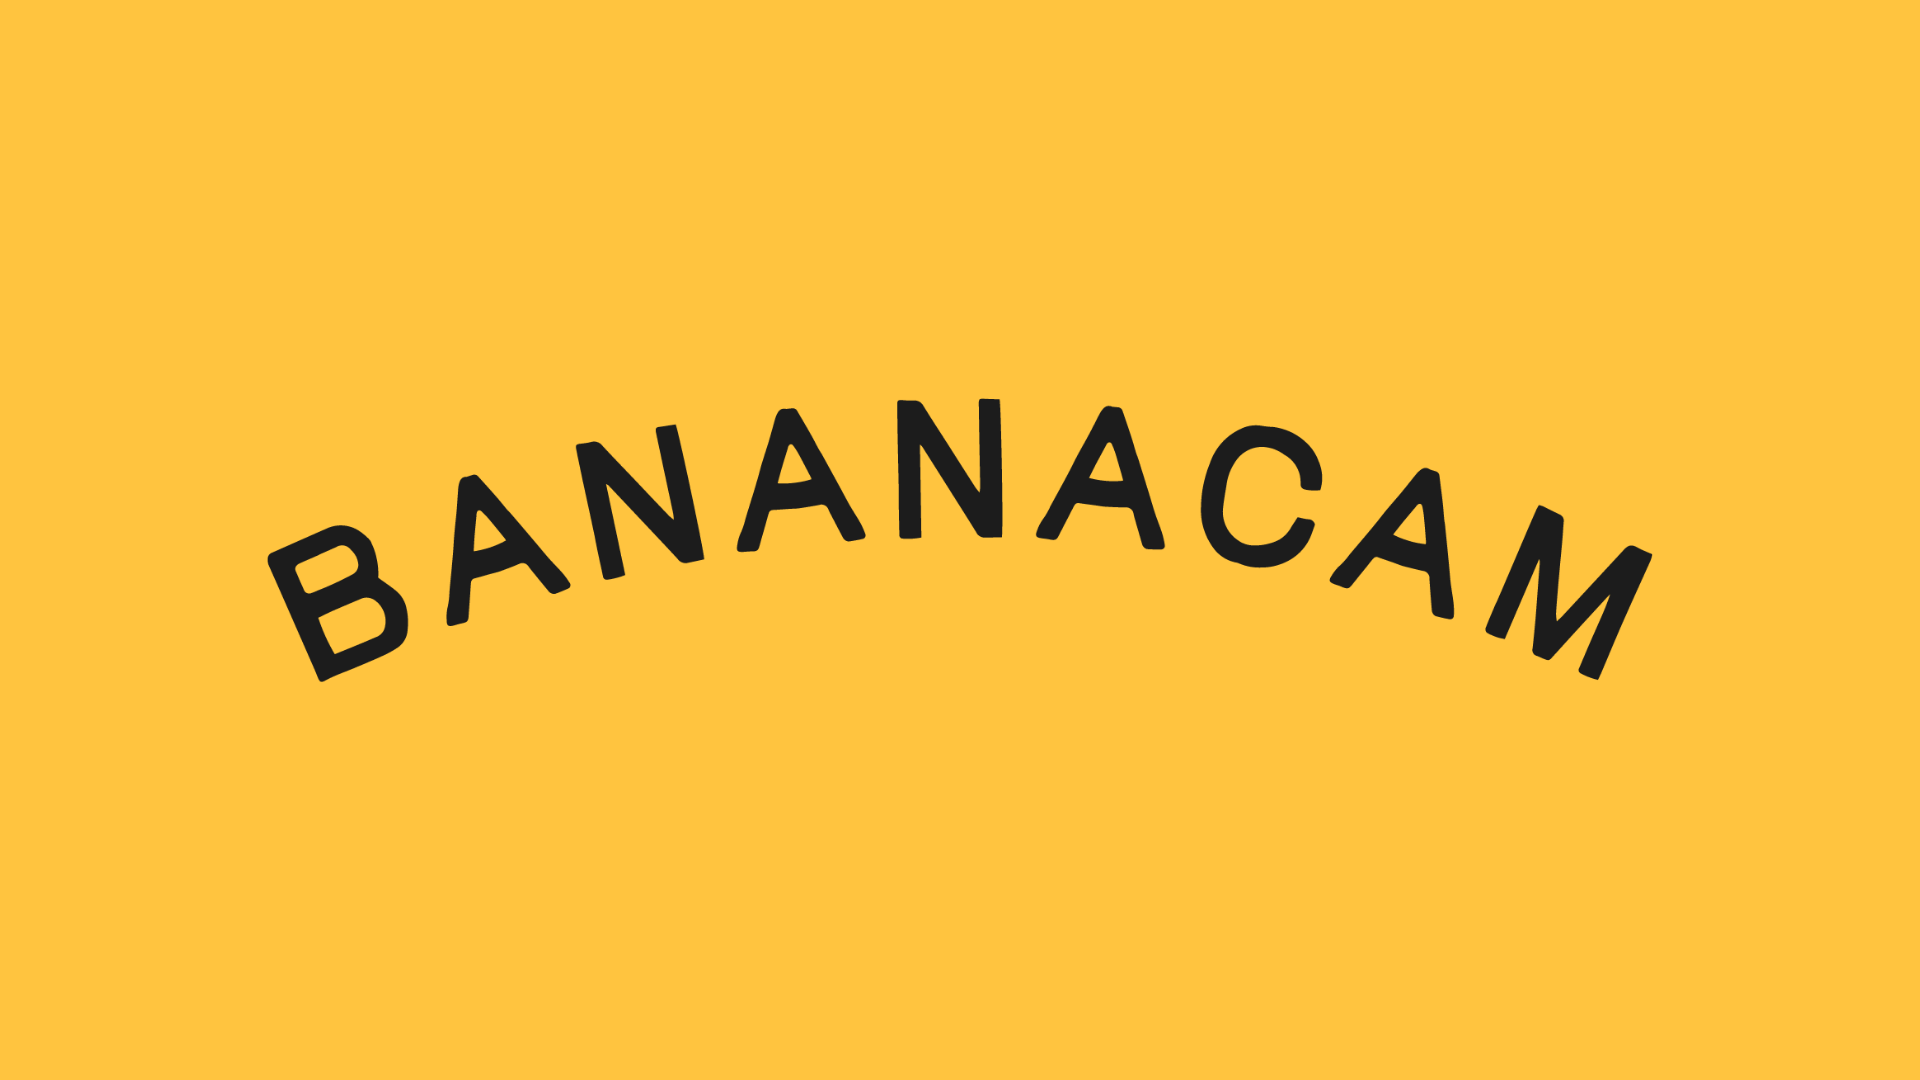 Bananacam logo